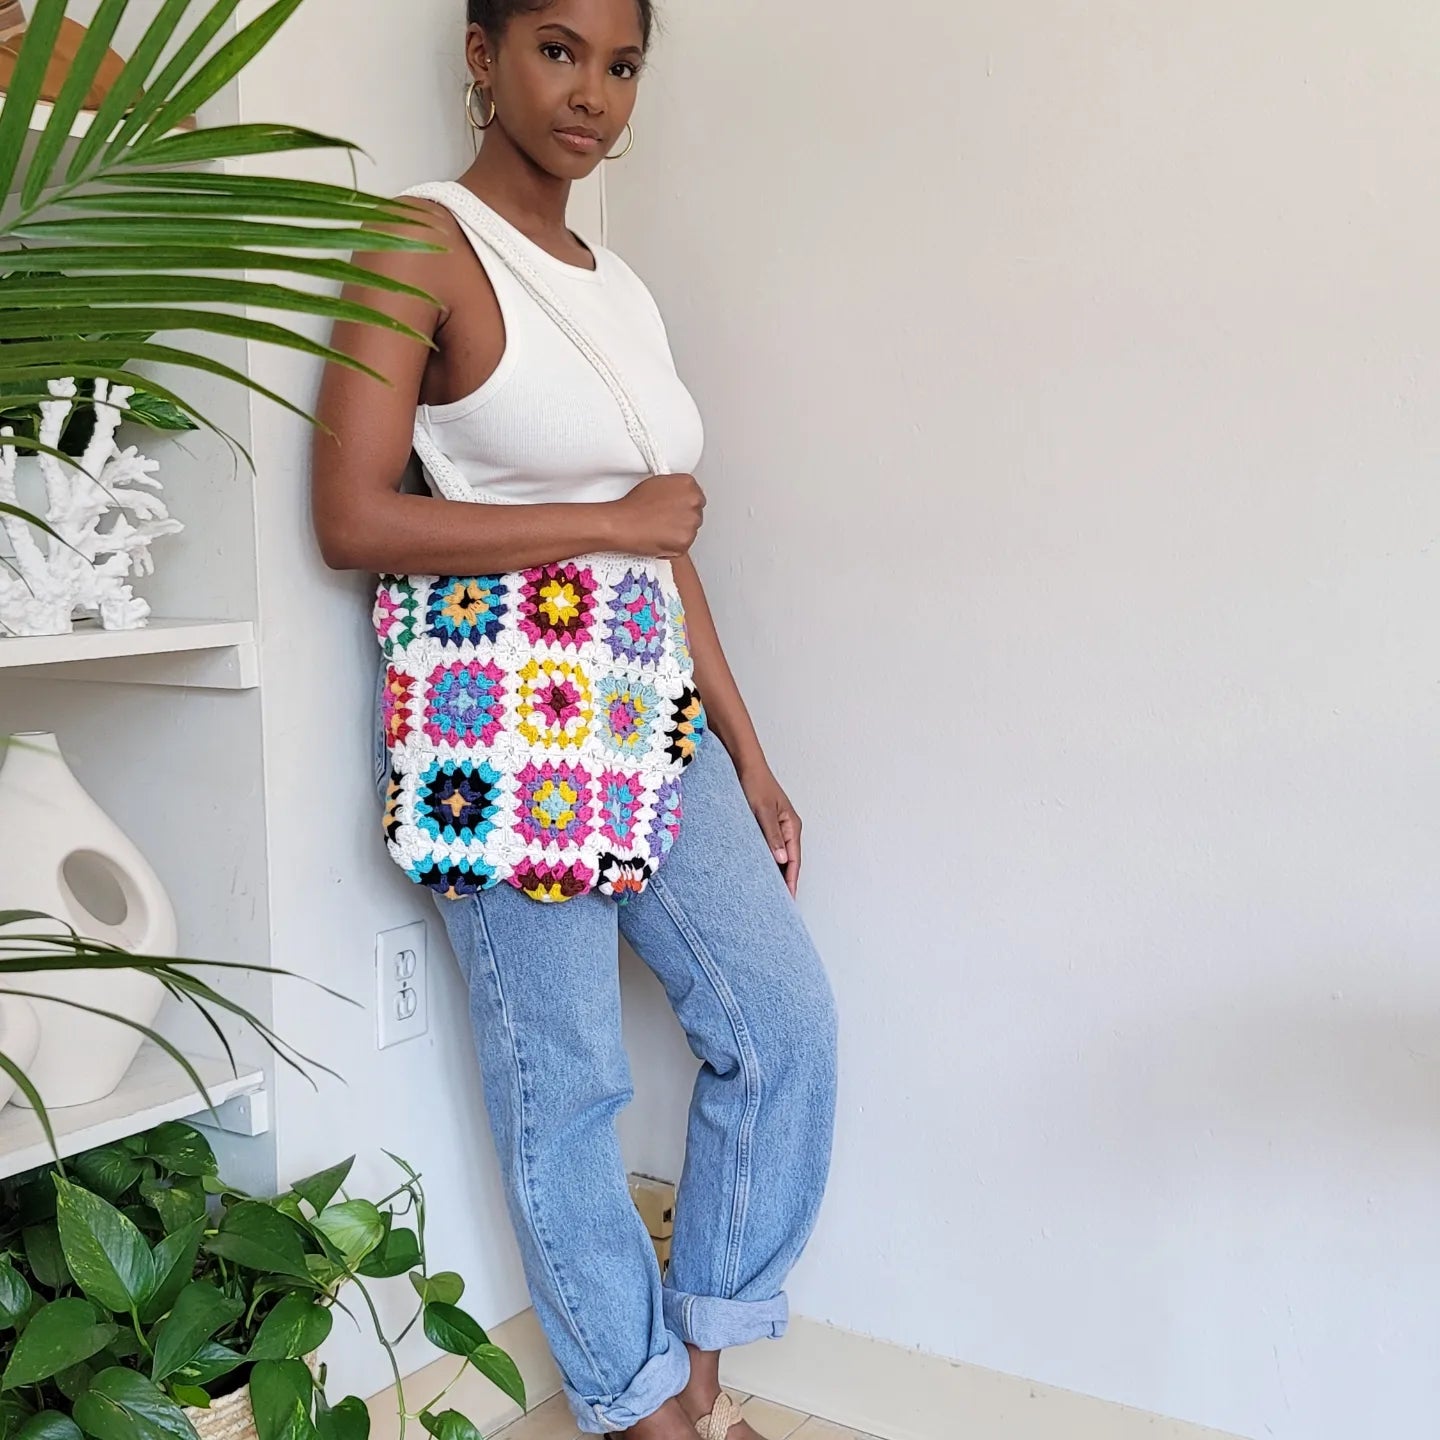 Bagstreetgirls Best Seller Items Black Crochet Bag - Etsy | Crochet yarn bag,  Crochet bag, Yarn bag